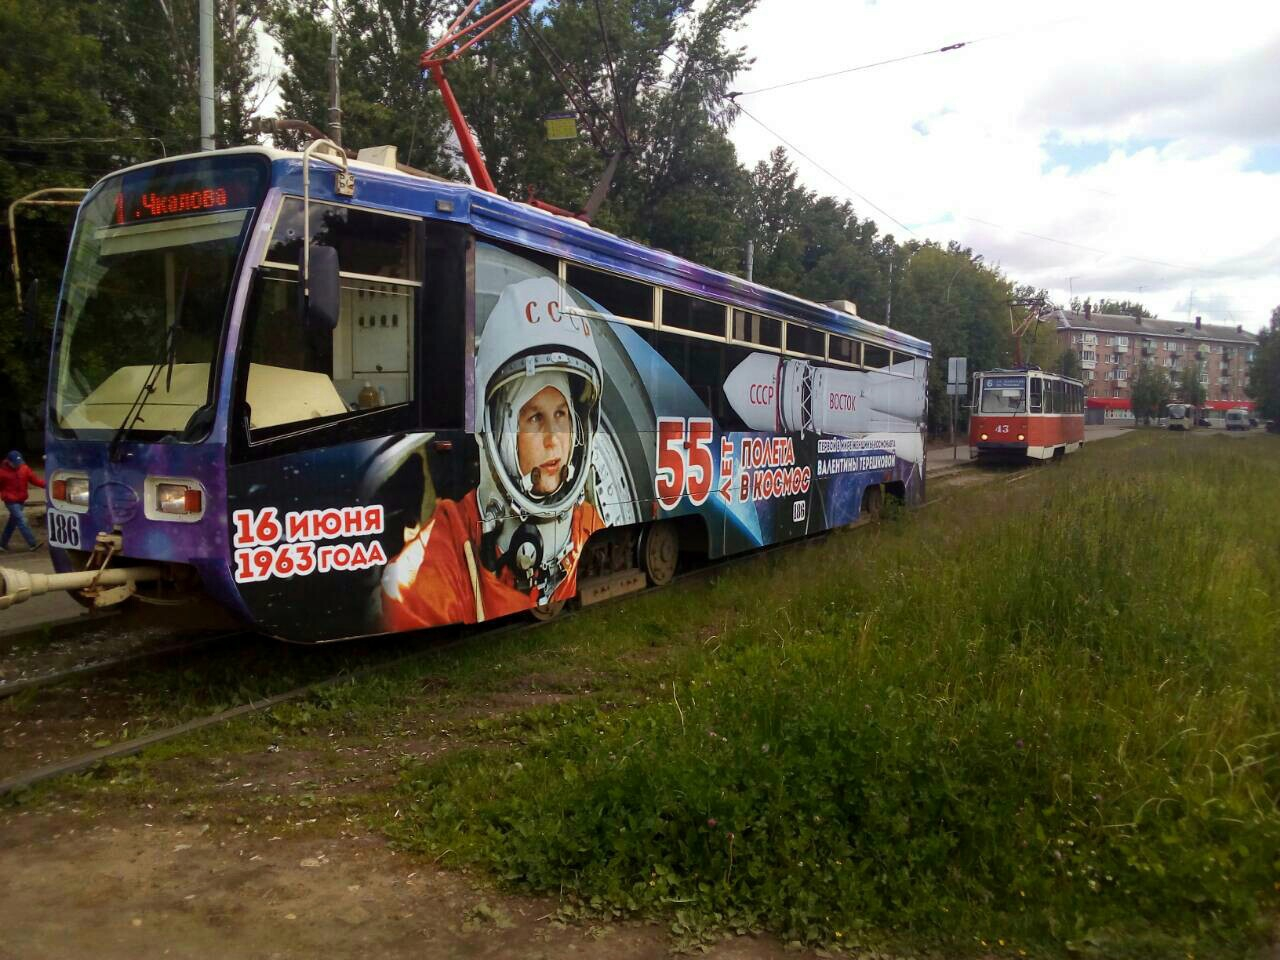 В Ярославле появились космические троллейбус и трамвай